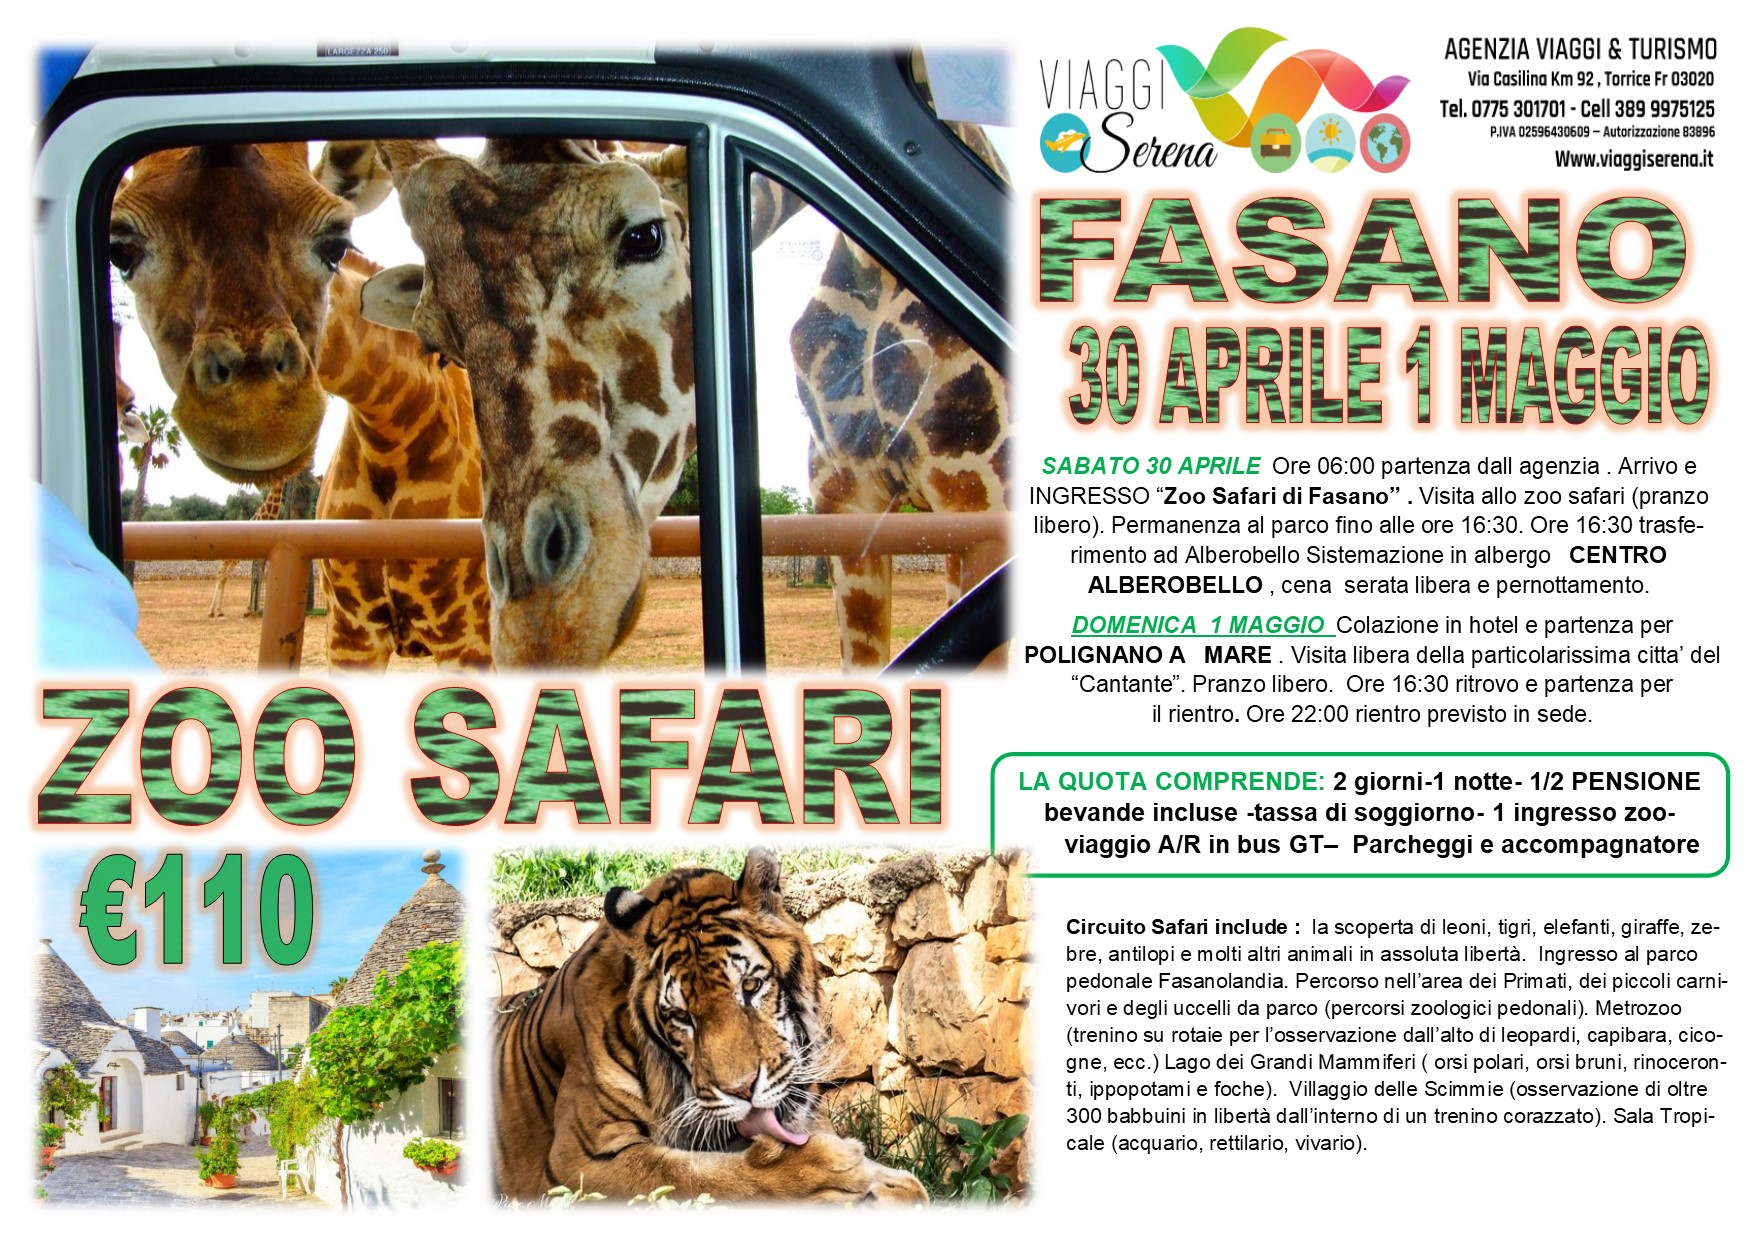 Viaggi di Gruppo: Zoo Safari di Fasano, Polignano a Mare 30 Aprile-1 Maggio € 110,00